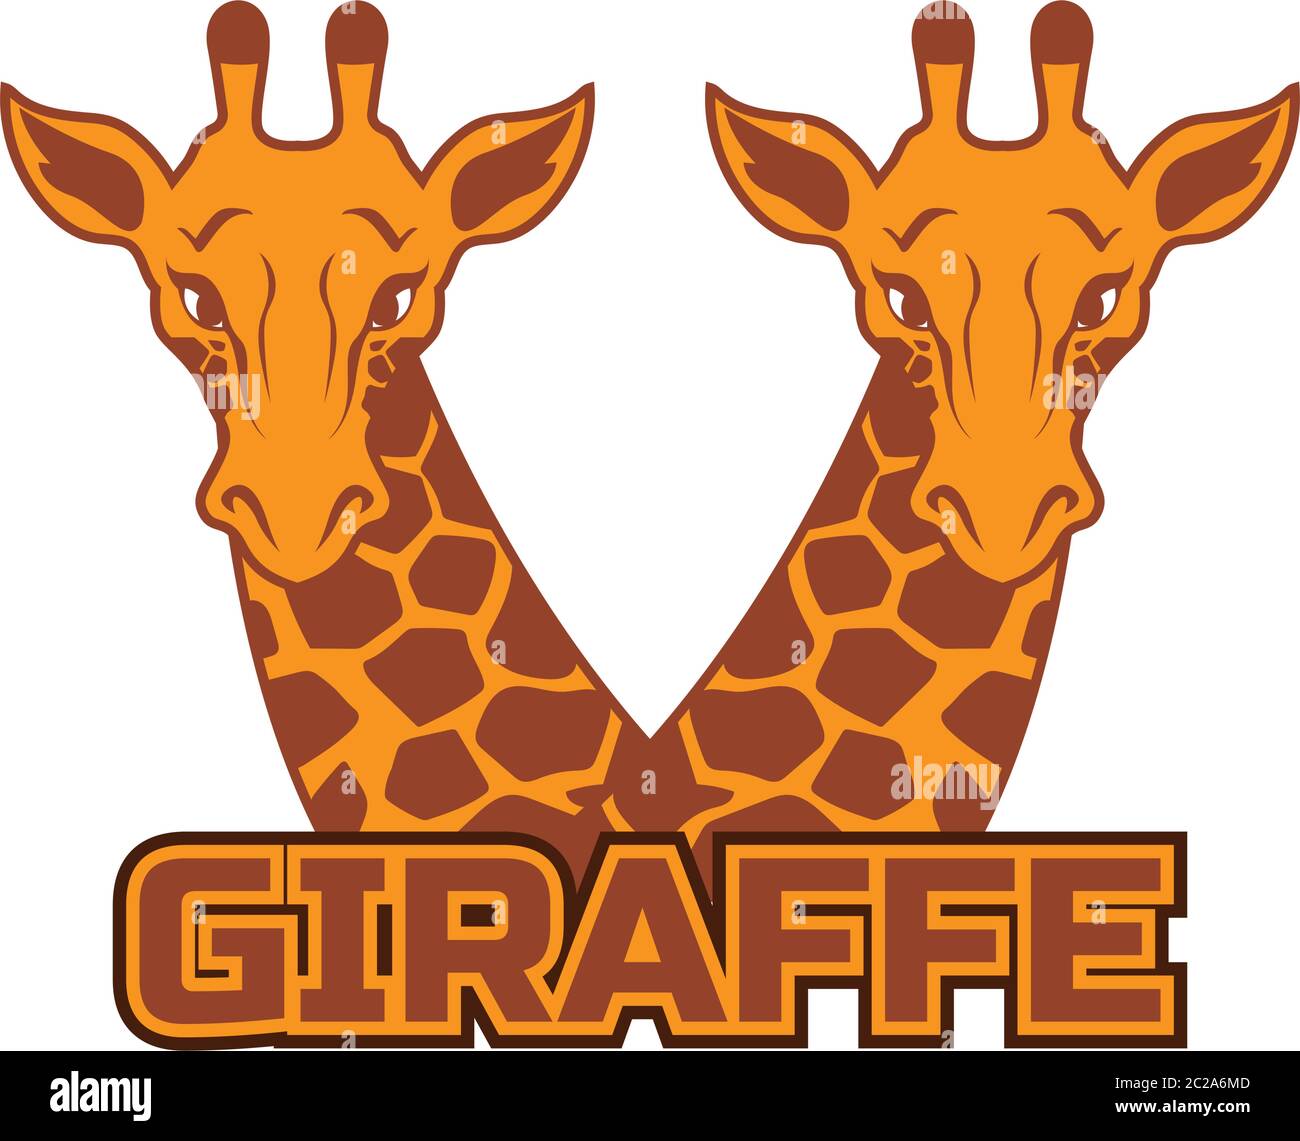 giraffe logo isolated on white background, vector illustration Stock Vector